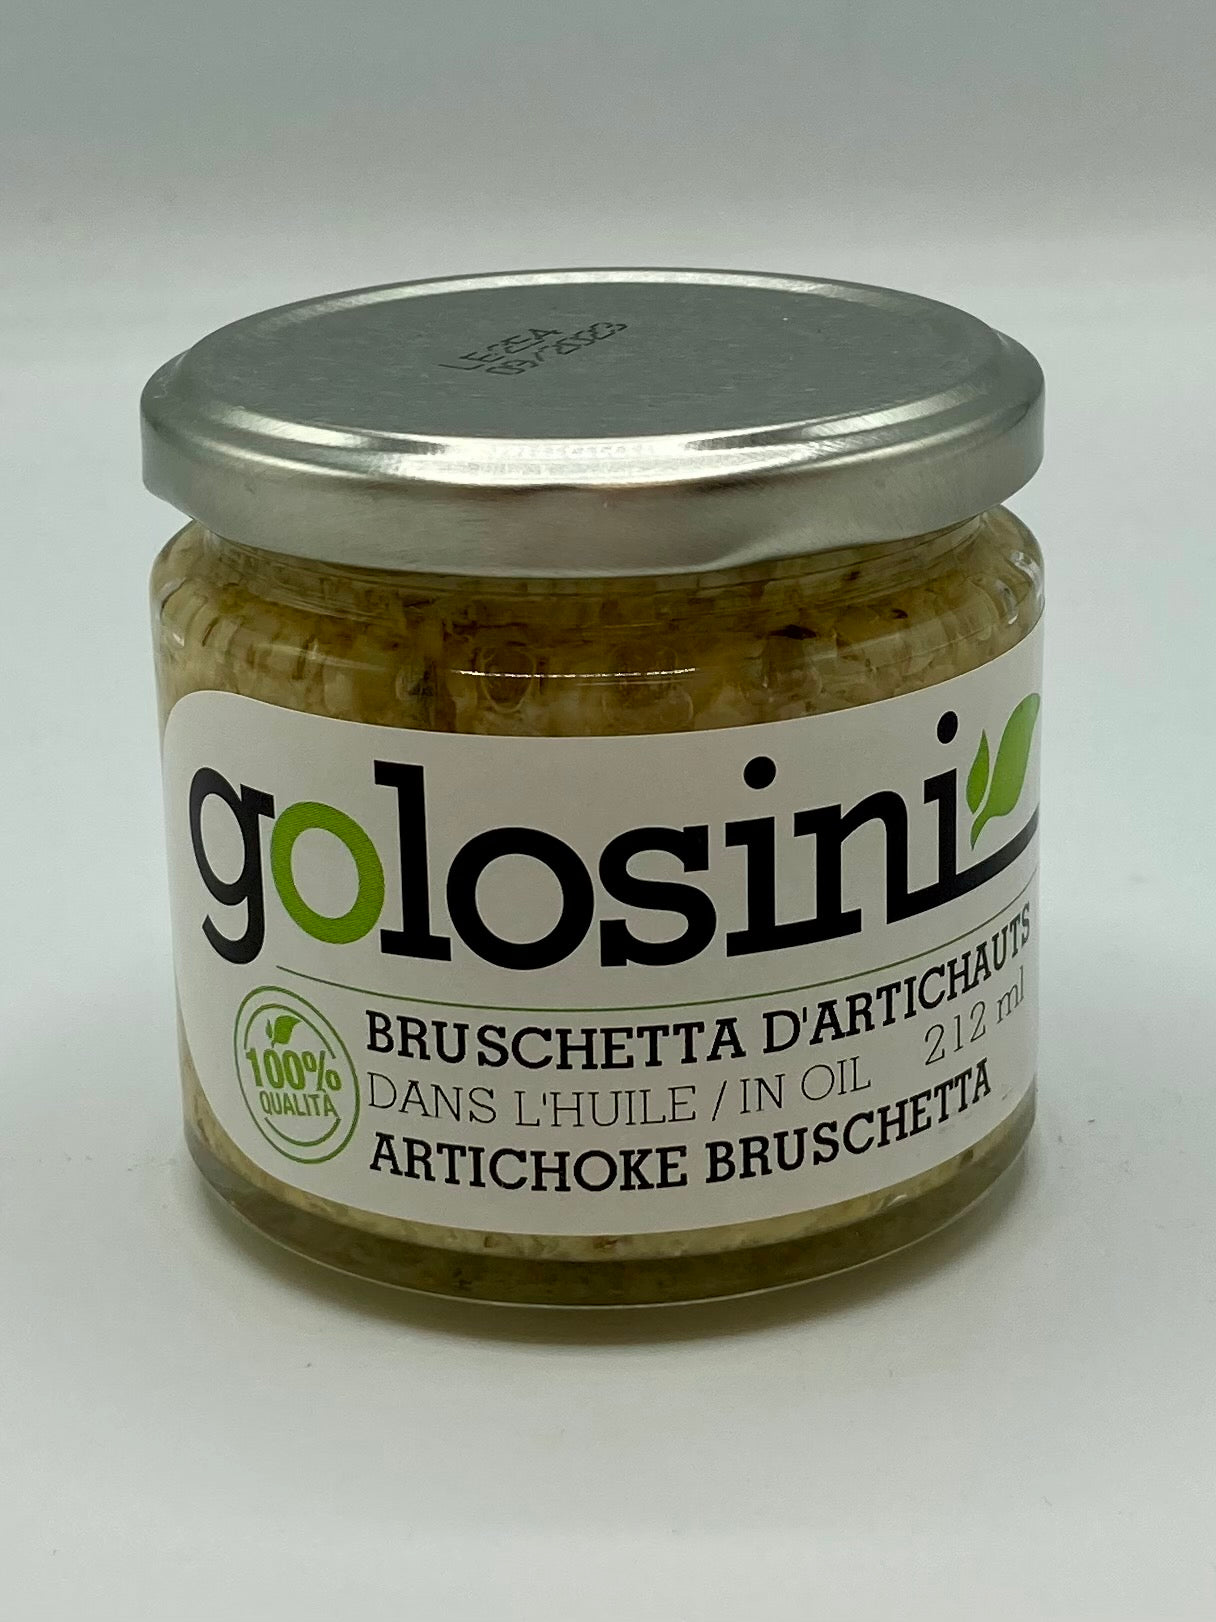 Bruschetta - Golosini Italian